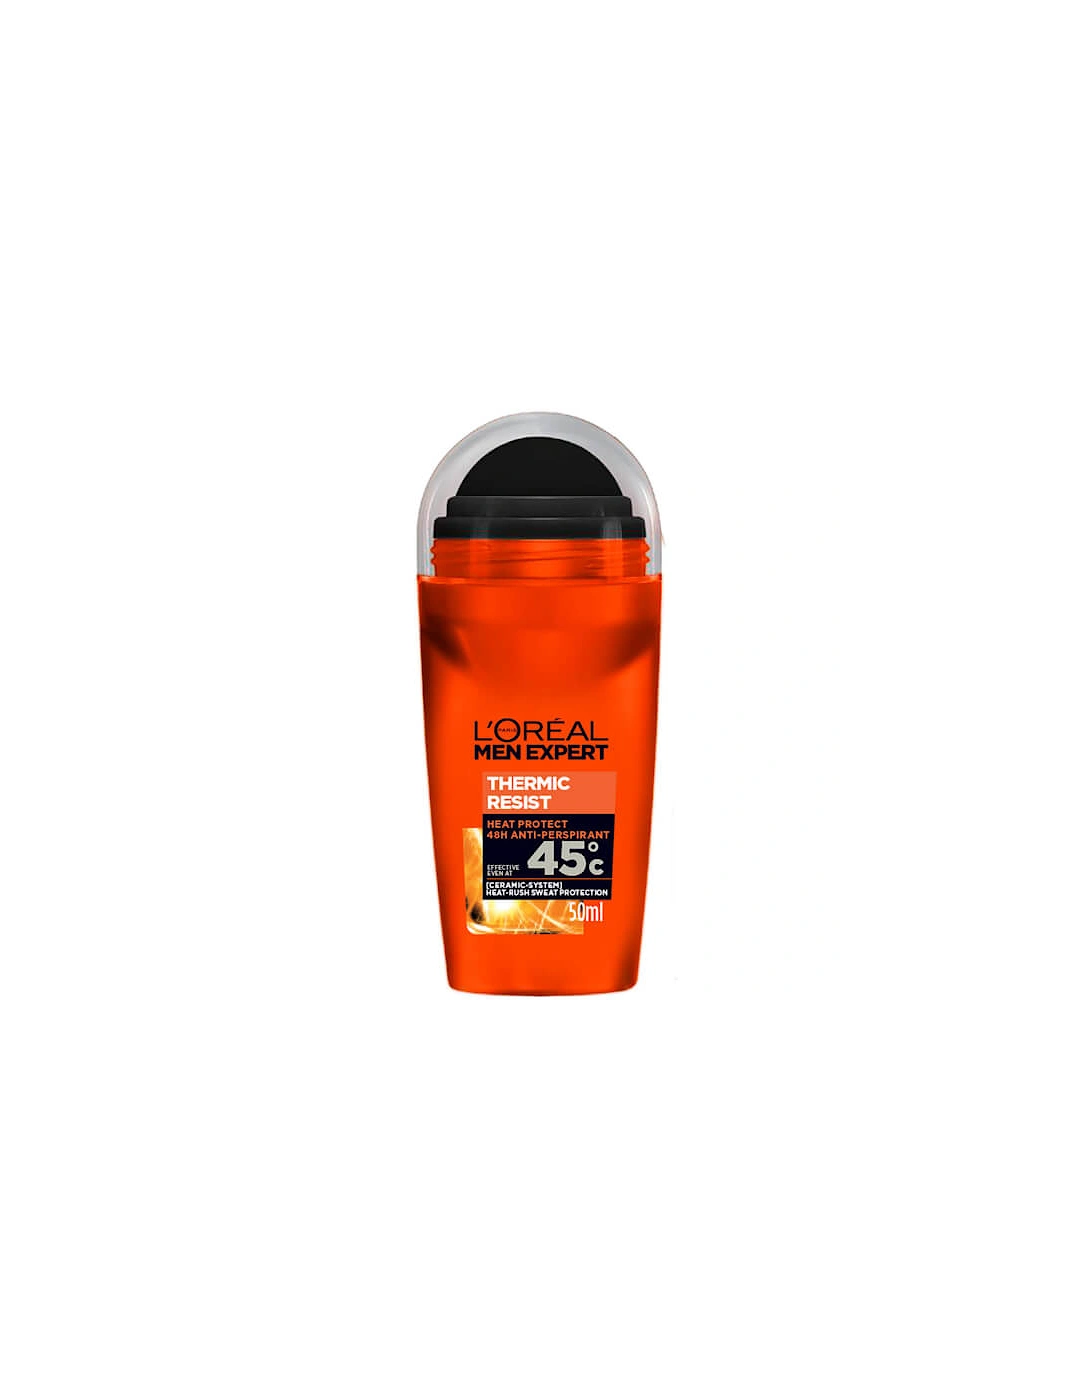 Men Expert Thermic Resist 48H Roll On Anti-Perspirant Deodorant 50ml - Paris Men Expert, 2 of 1